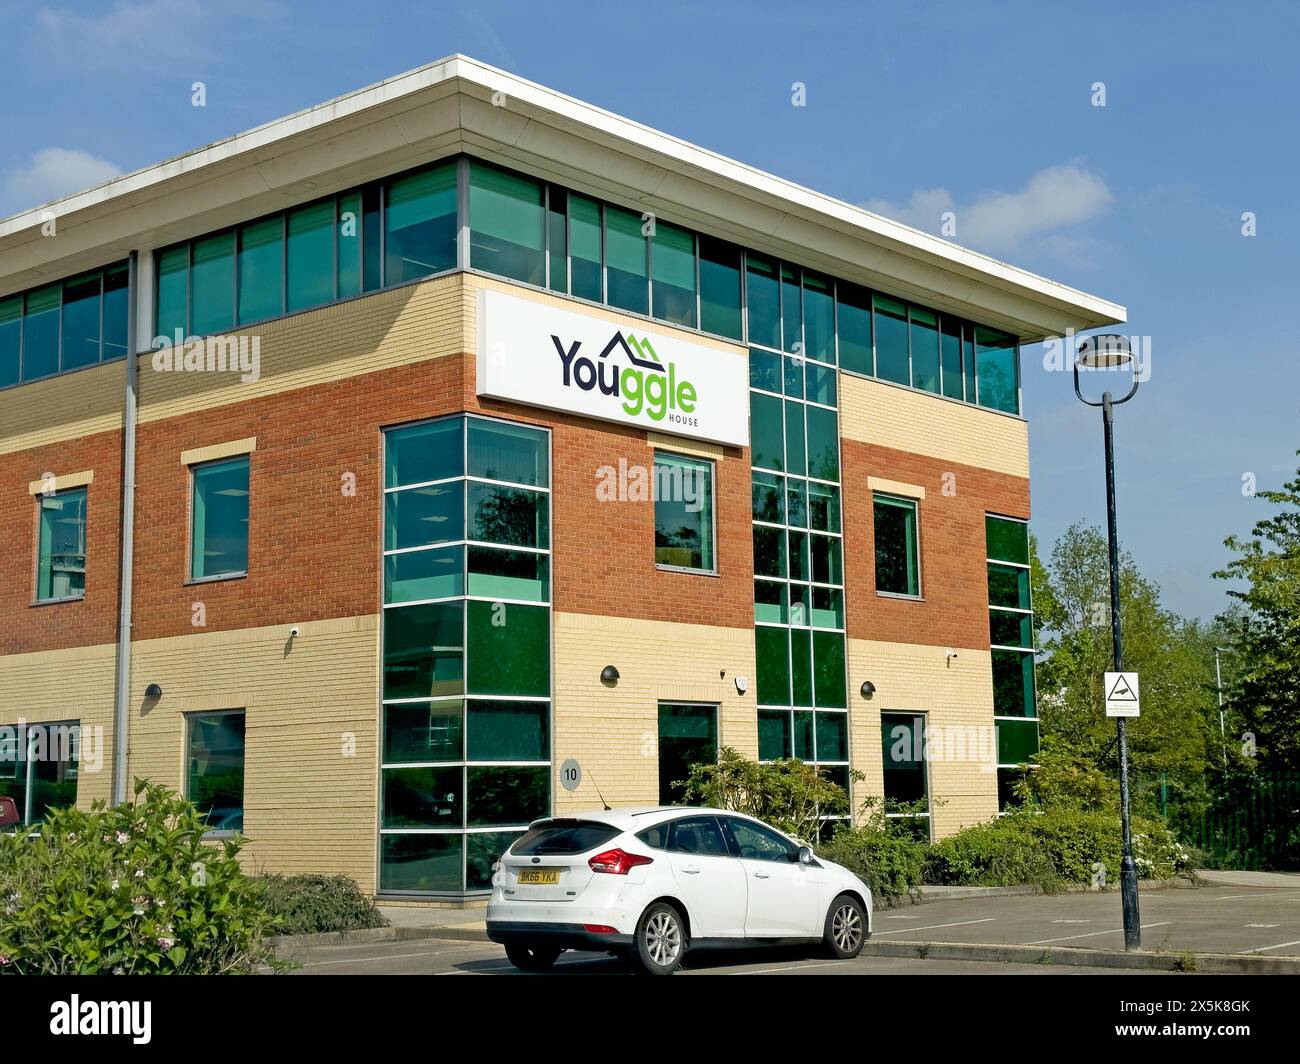 YHG - Your Housing Group - Youggle House, Birchwood, Warrington,Cheshire,England, WA3 7QH Stock Photo